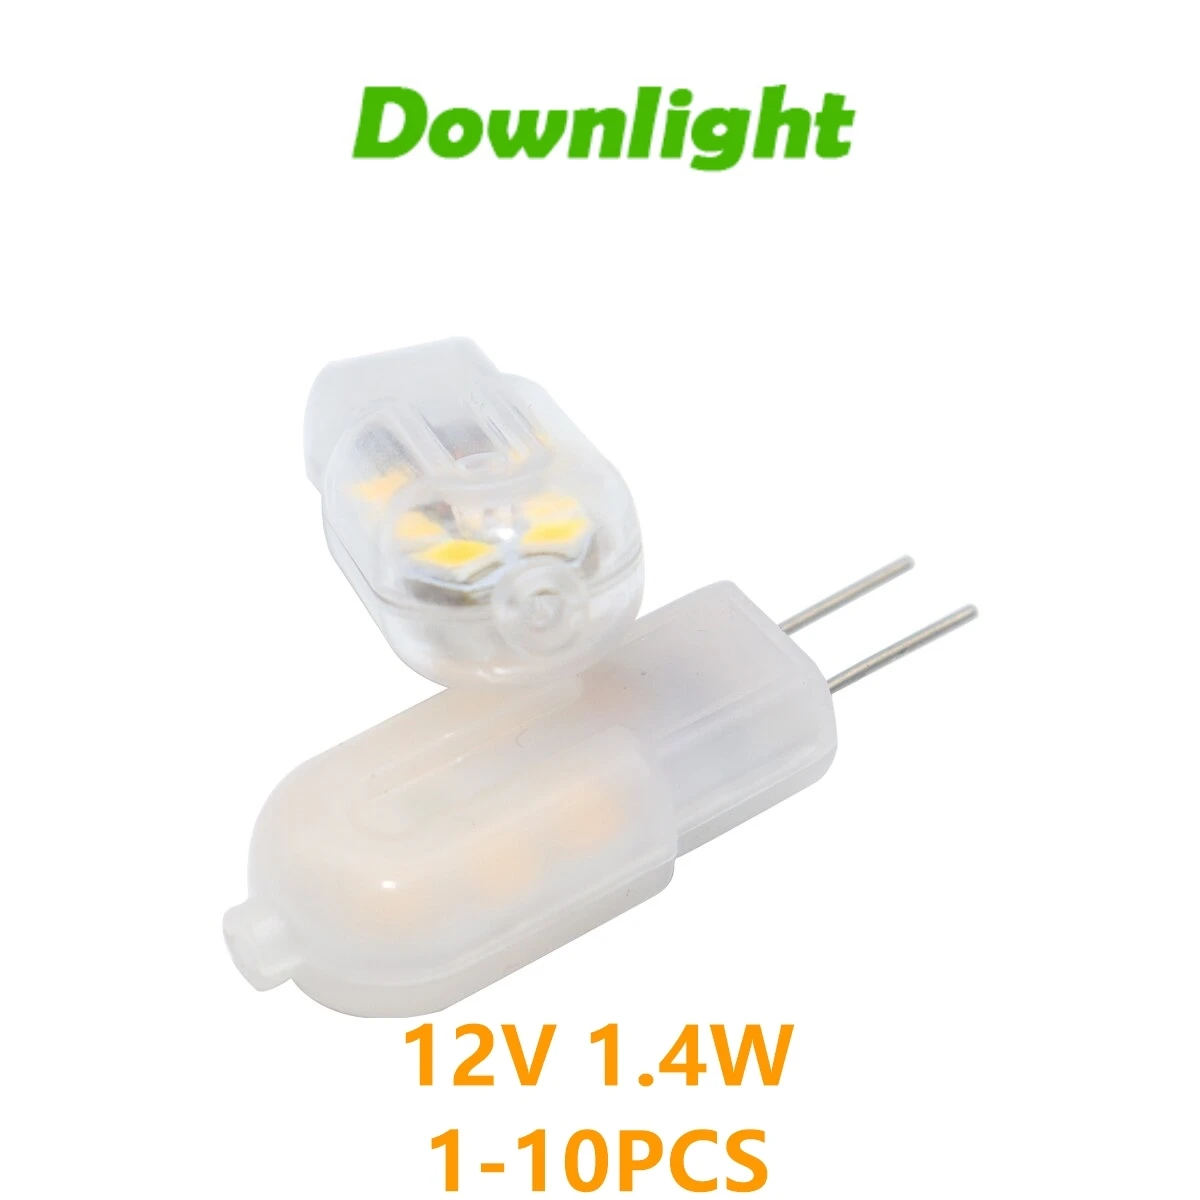 Mini culot G4 bakélite avec câble pour ampoules LED ampoule